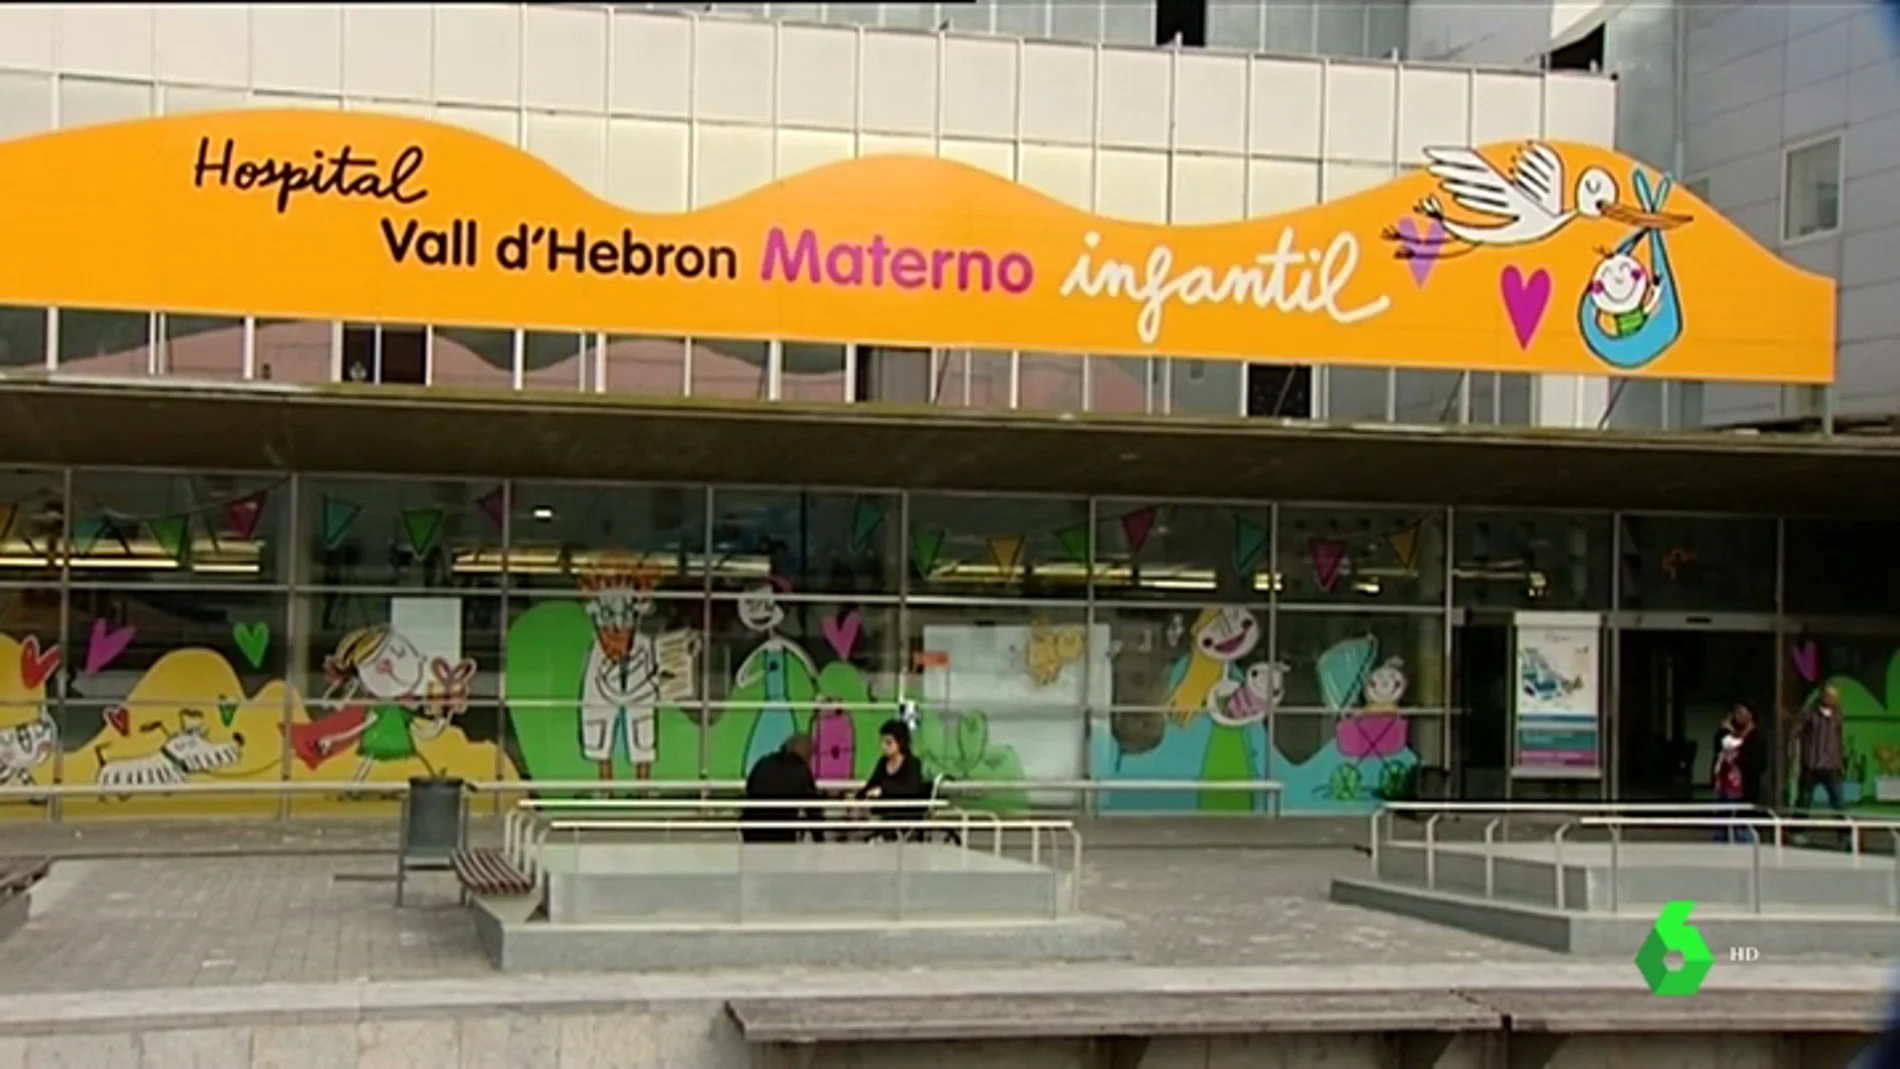 Imagen de la fachada de la zona infantil del Hospital Vall d'Hebron de Barcelona